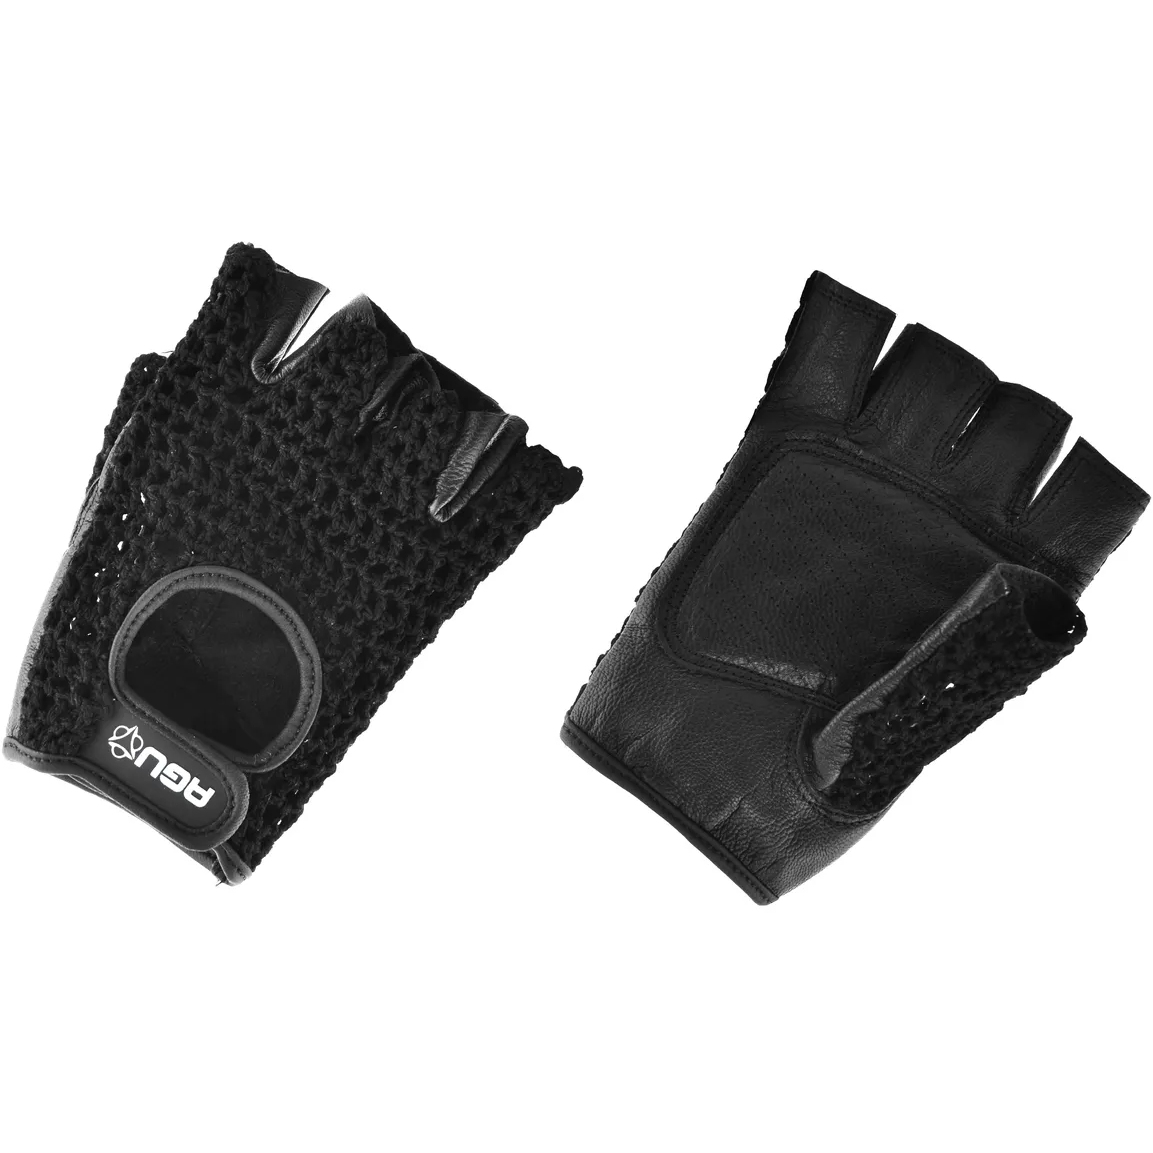 Produktbild von AGU Essential Classic Handschuhe - schwarz